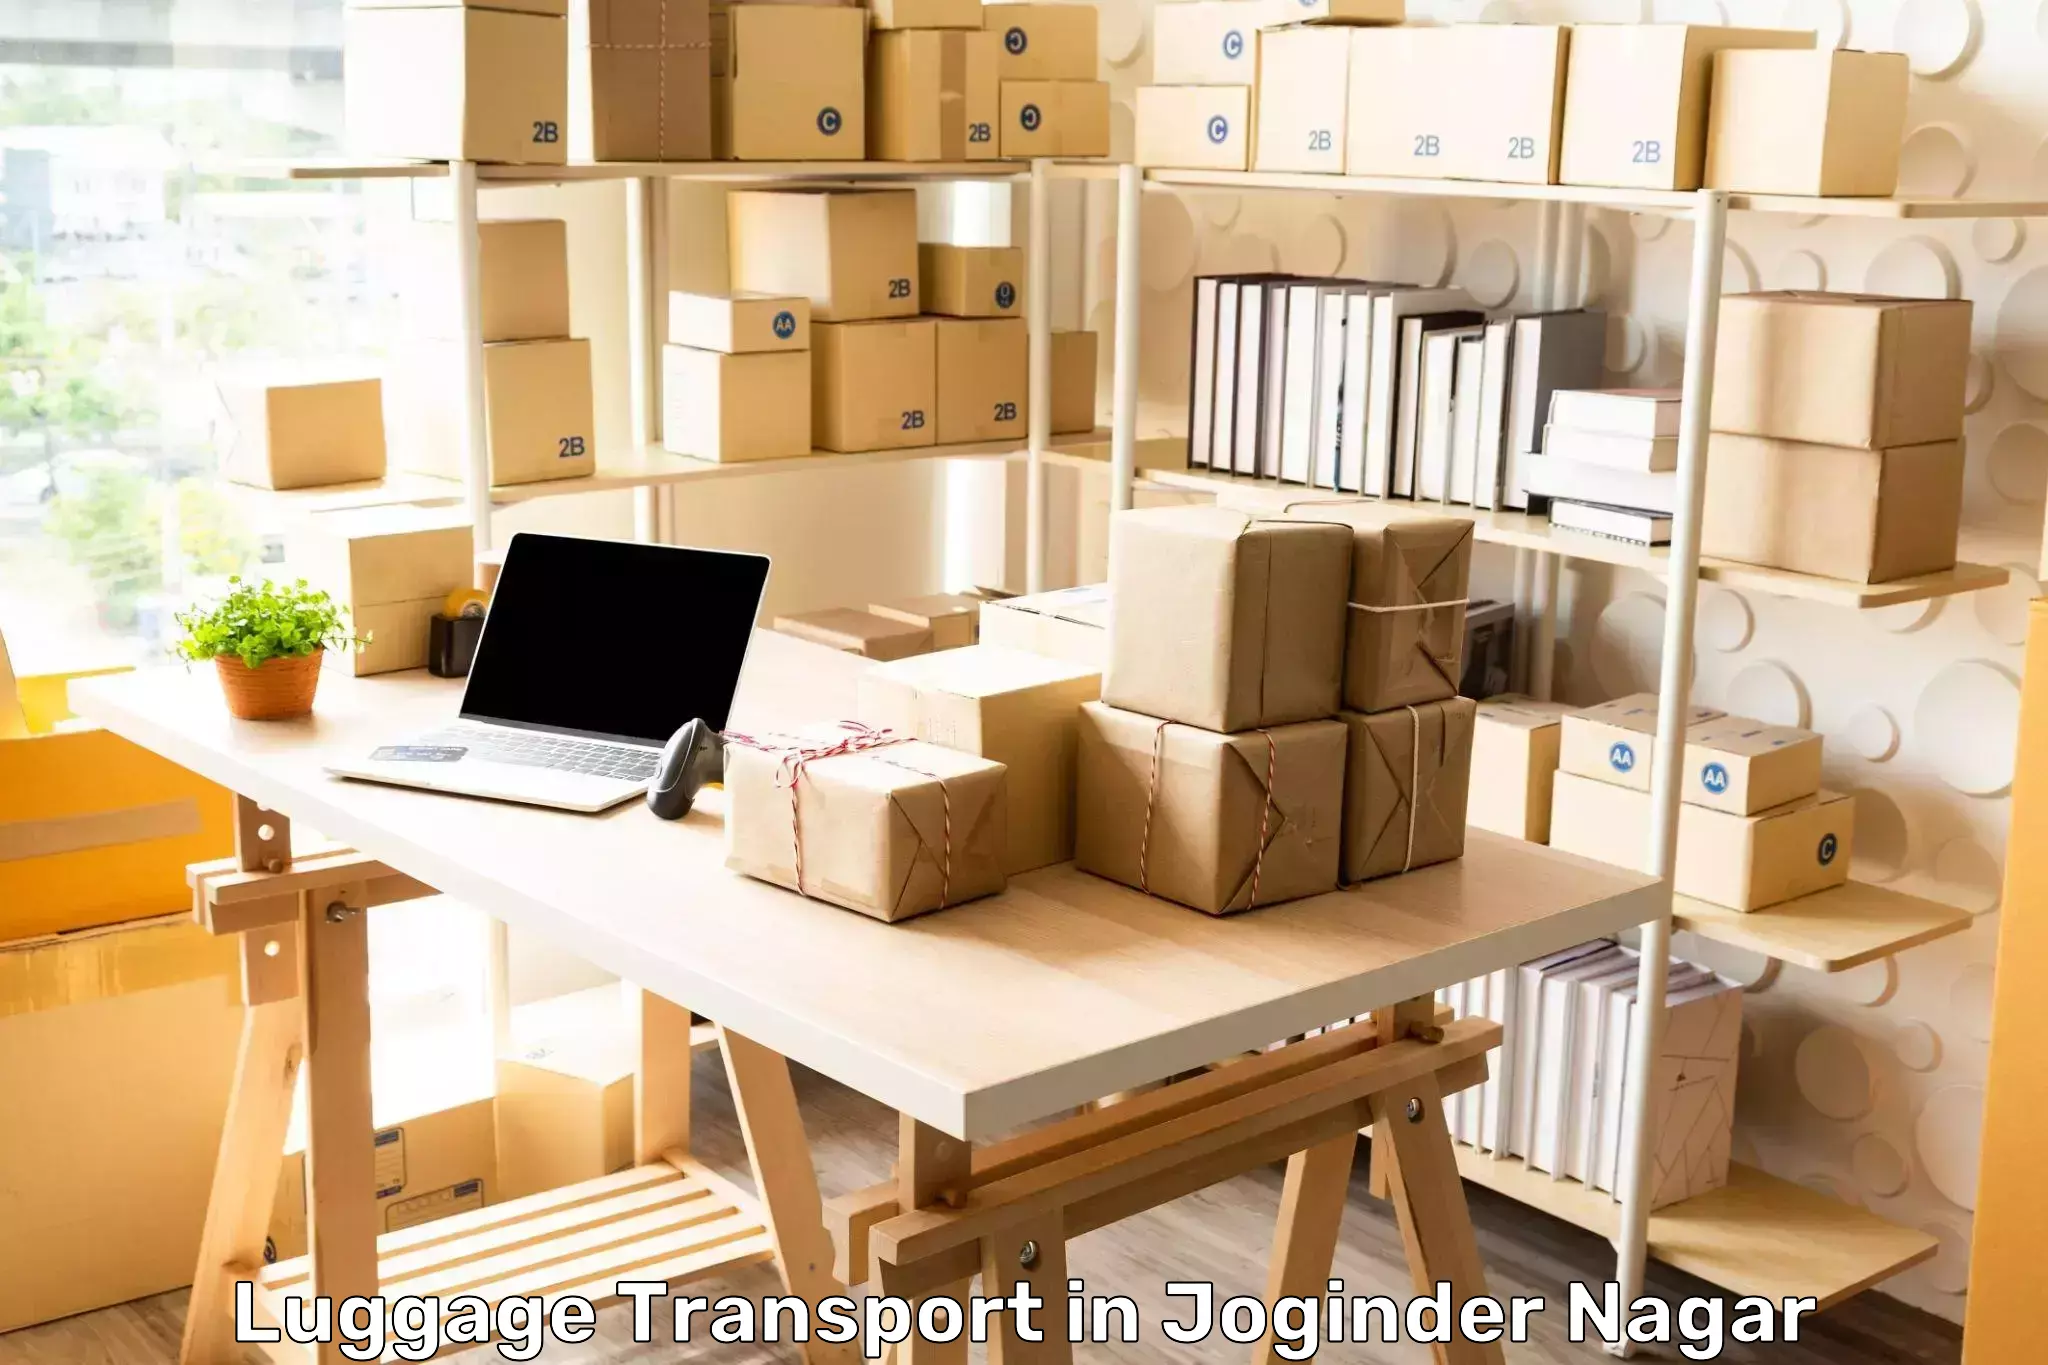 Luggage delivery optimization in Joginder Nagar